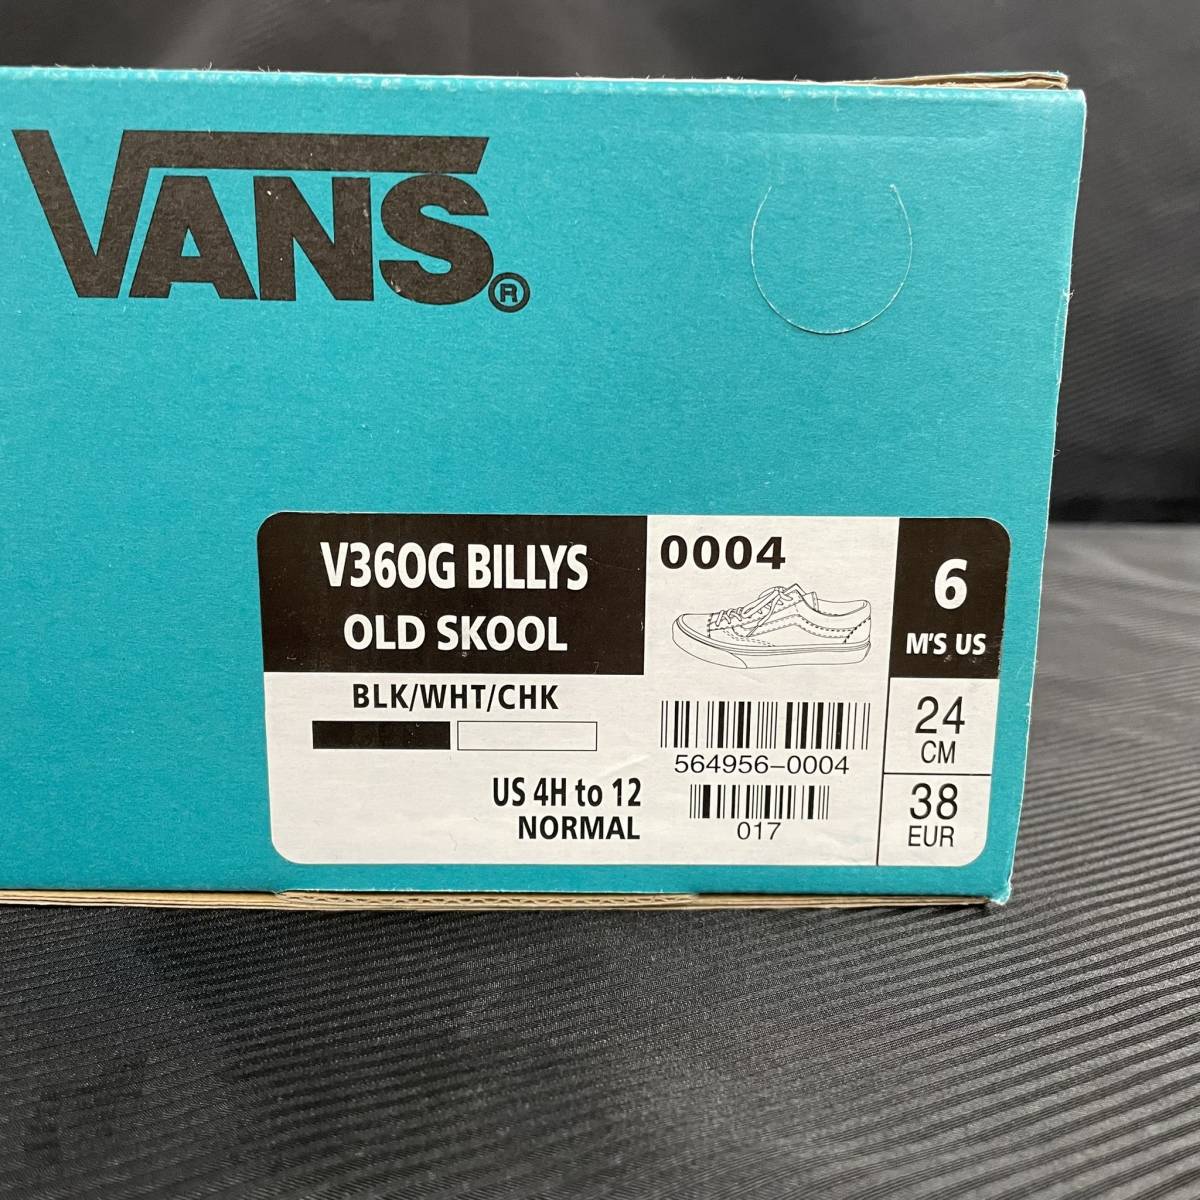 VANS BILLYS V36OG OLD SKOOL 24cm バンズ ビリーズ オールドスクール スニーカー 靴 ブラック ホワイト 黒 白 未使用_画像7